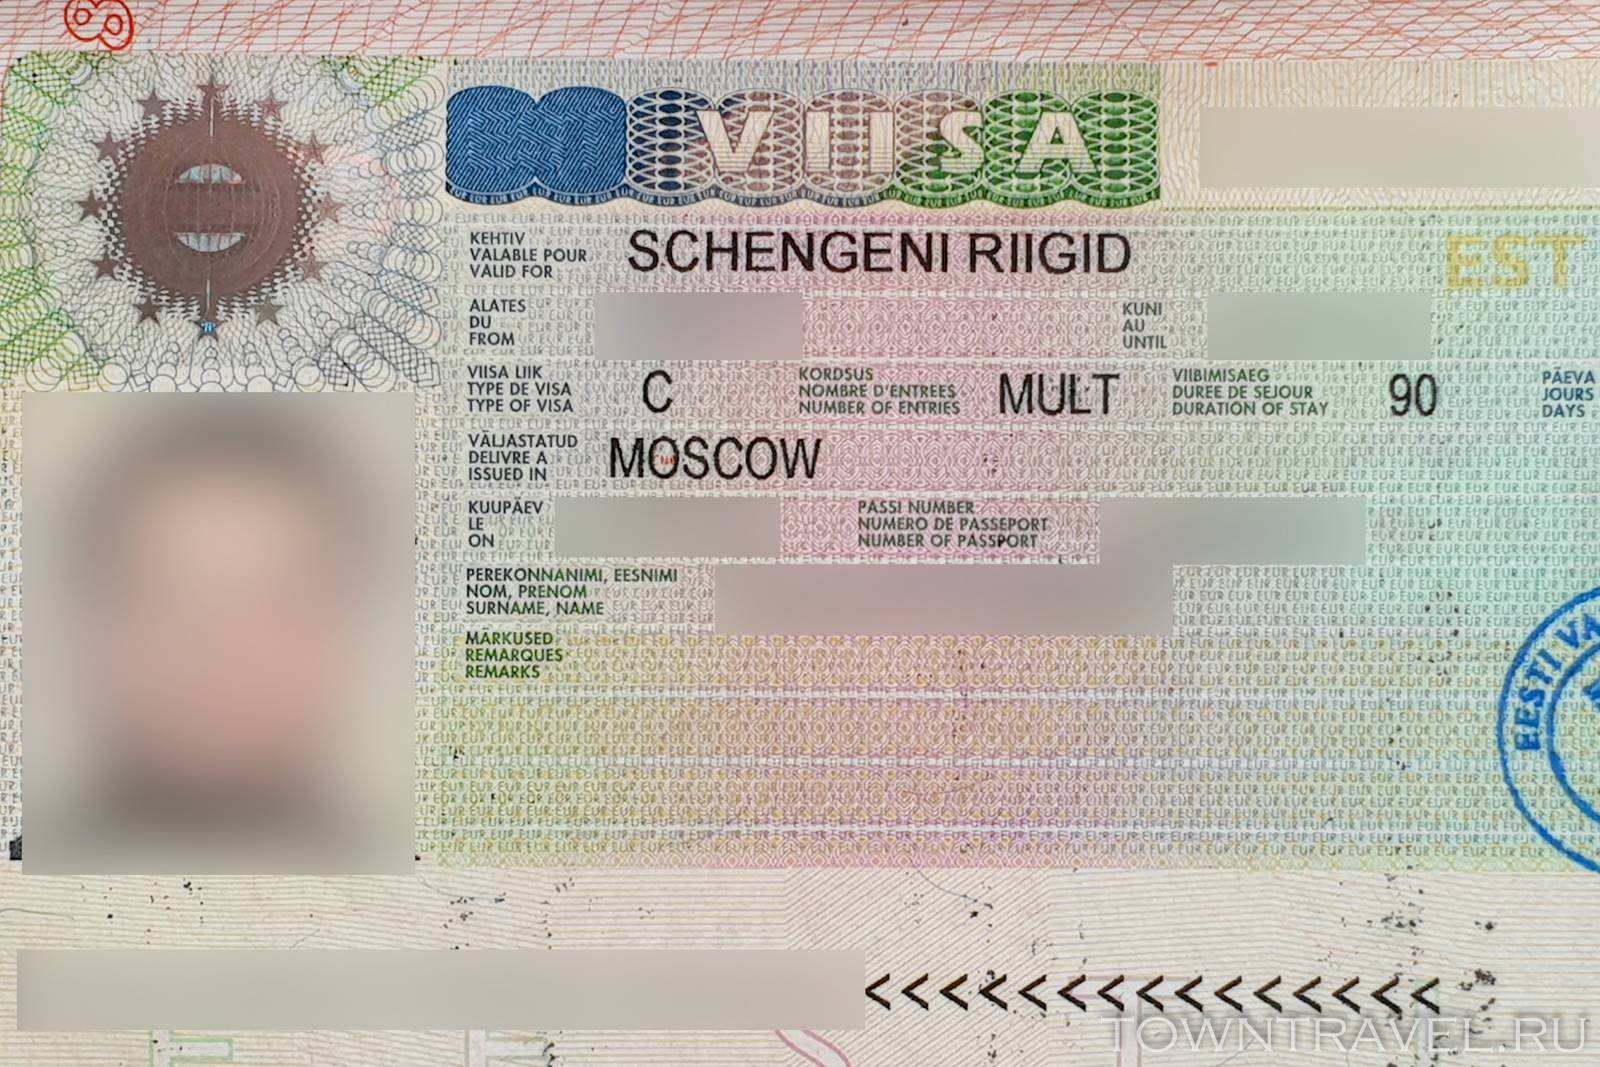 Виза в эстонию: туристическая и иные, список документов, сколько стоит для россиян, как получить самостоятельно, дают ли многократную шенгенскую, долго ли делается?